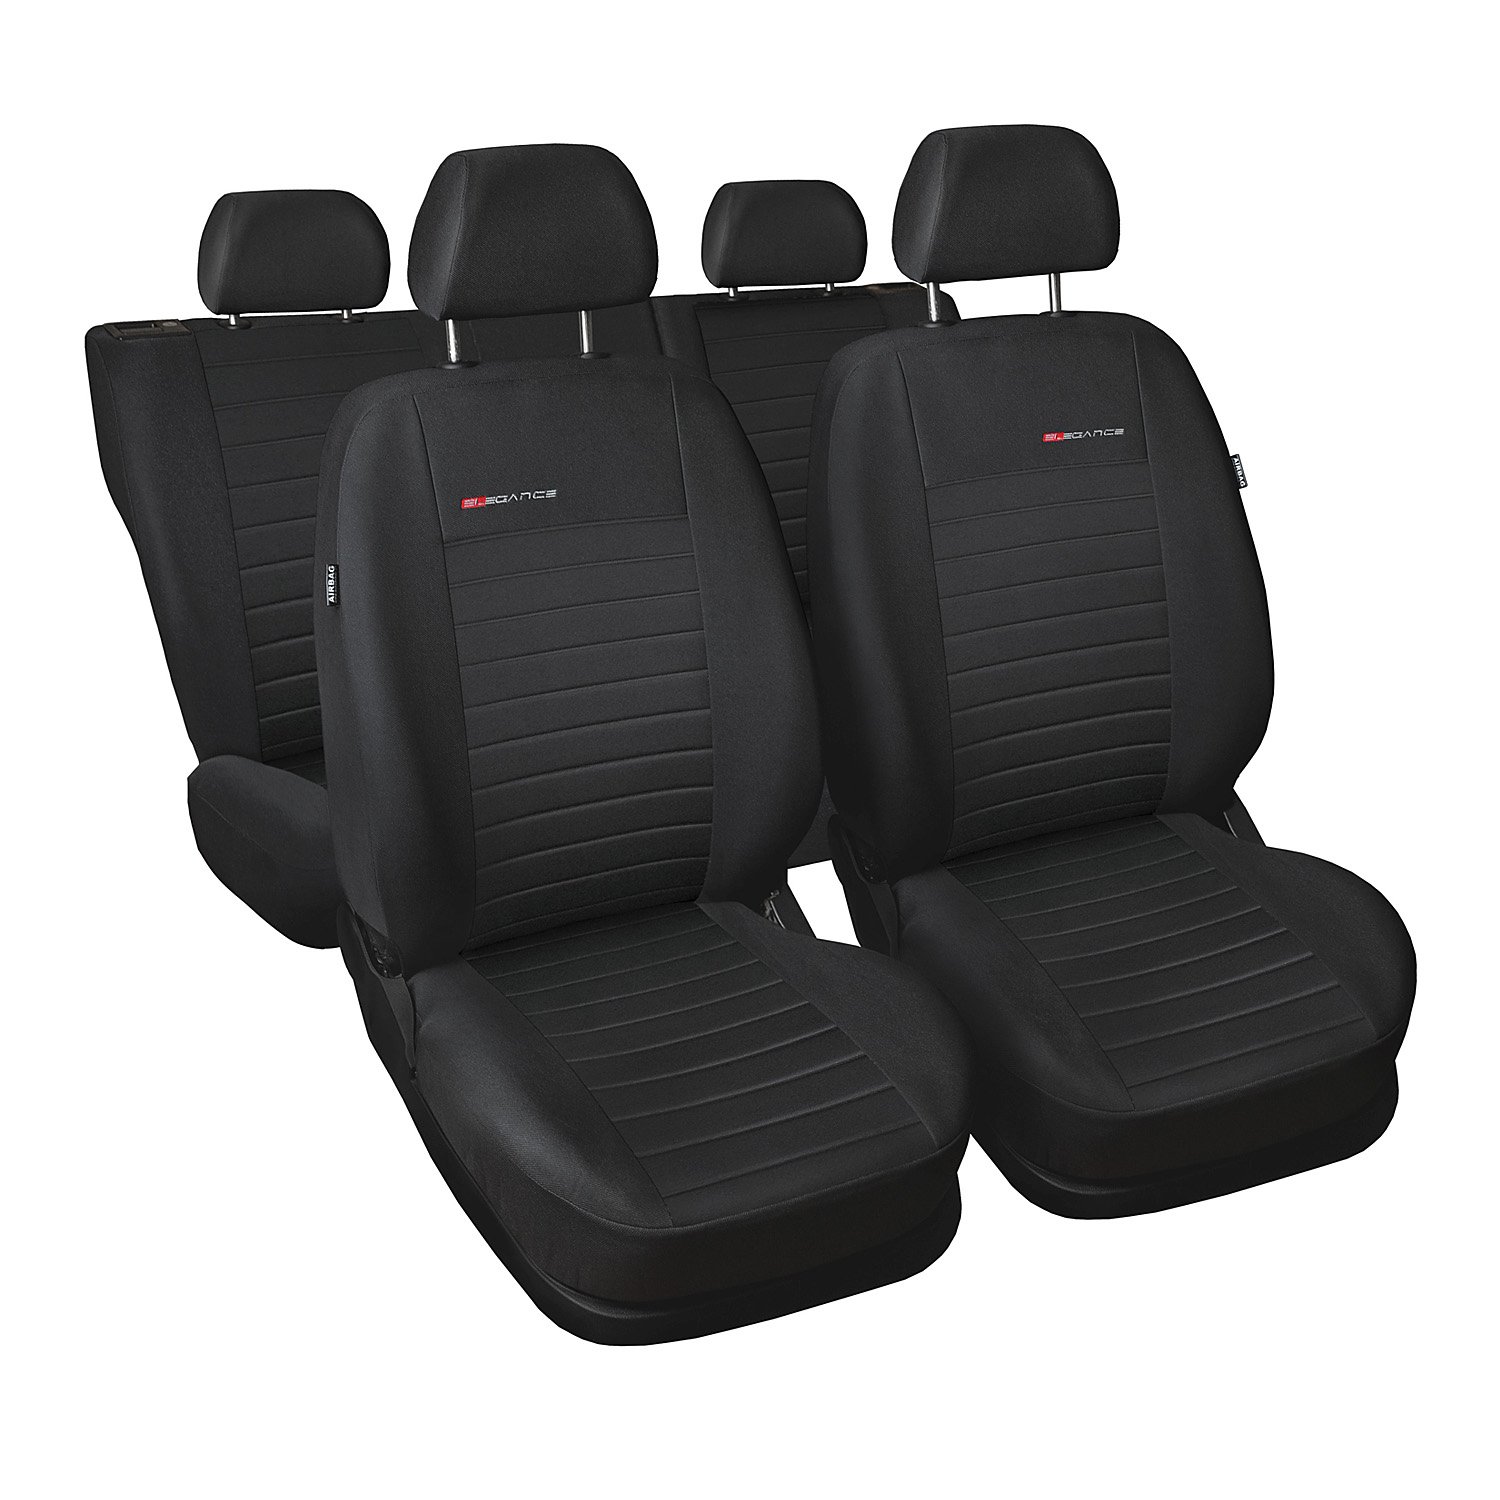 GSC Sitzbezüge Autositzbezug Komplettset 5-Sitze, Universal Grau, Elegance, kompatibel mit Toyota Avensis 5-Sitze